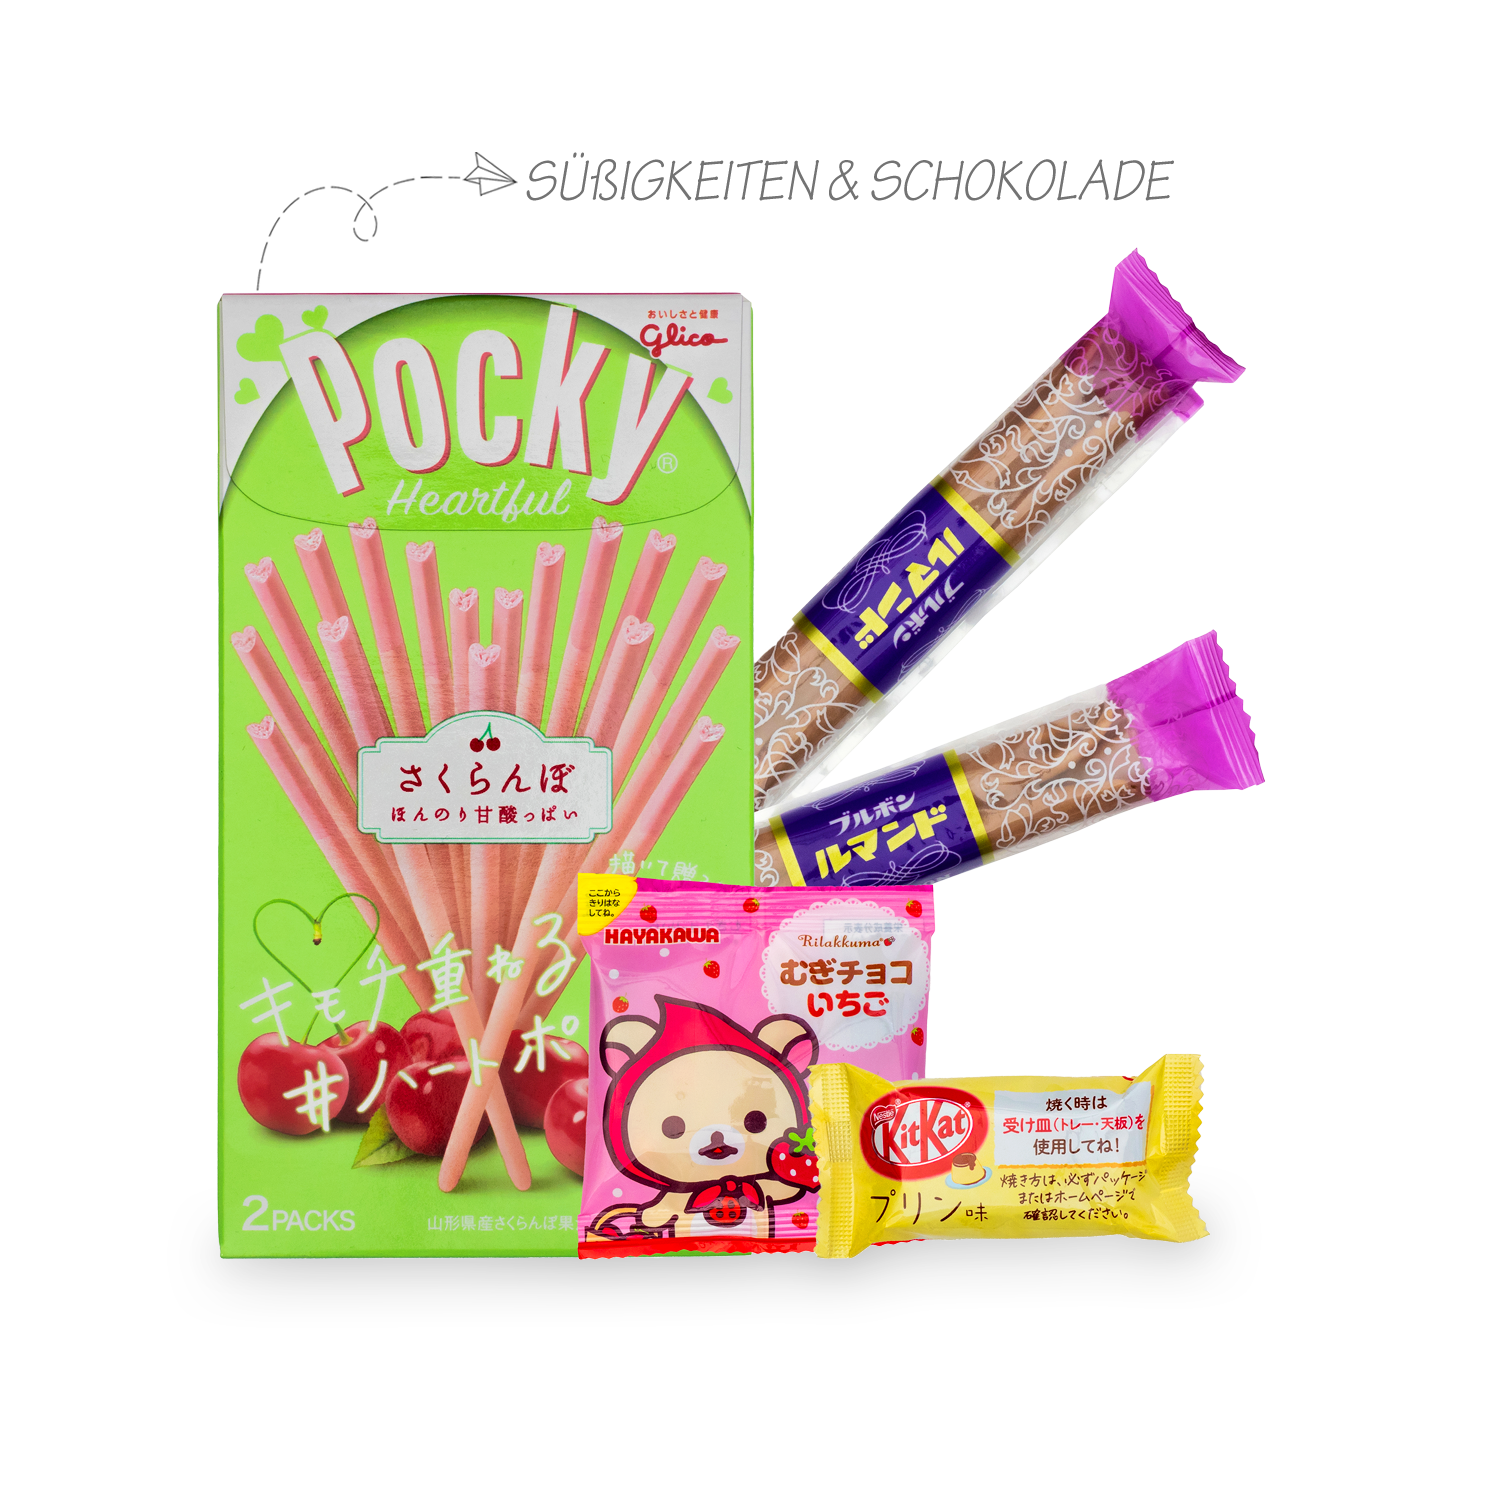 Oyatsu: Überraschungsbox mit 23 japanischen Süßigkeiten